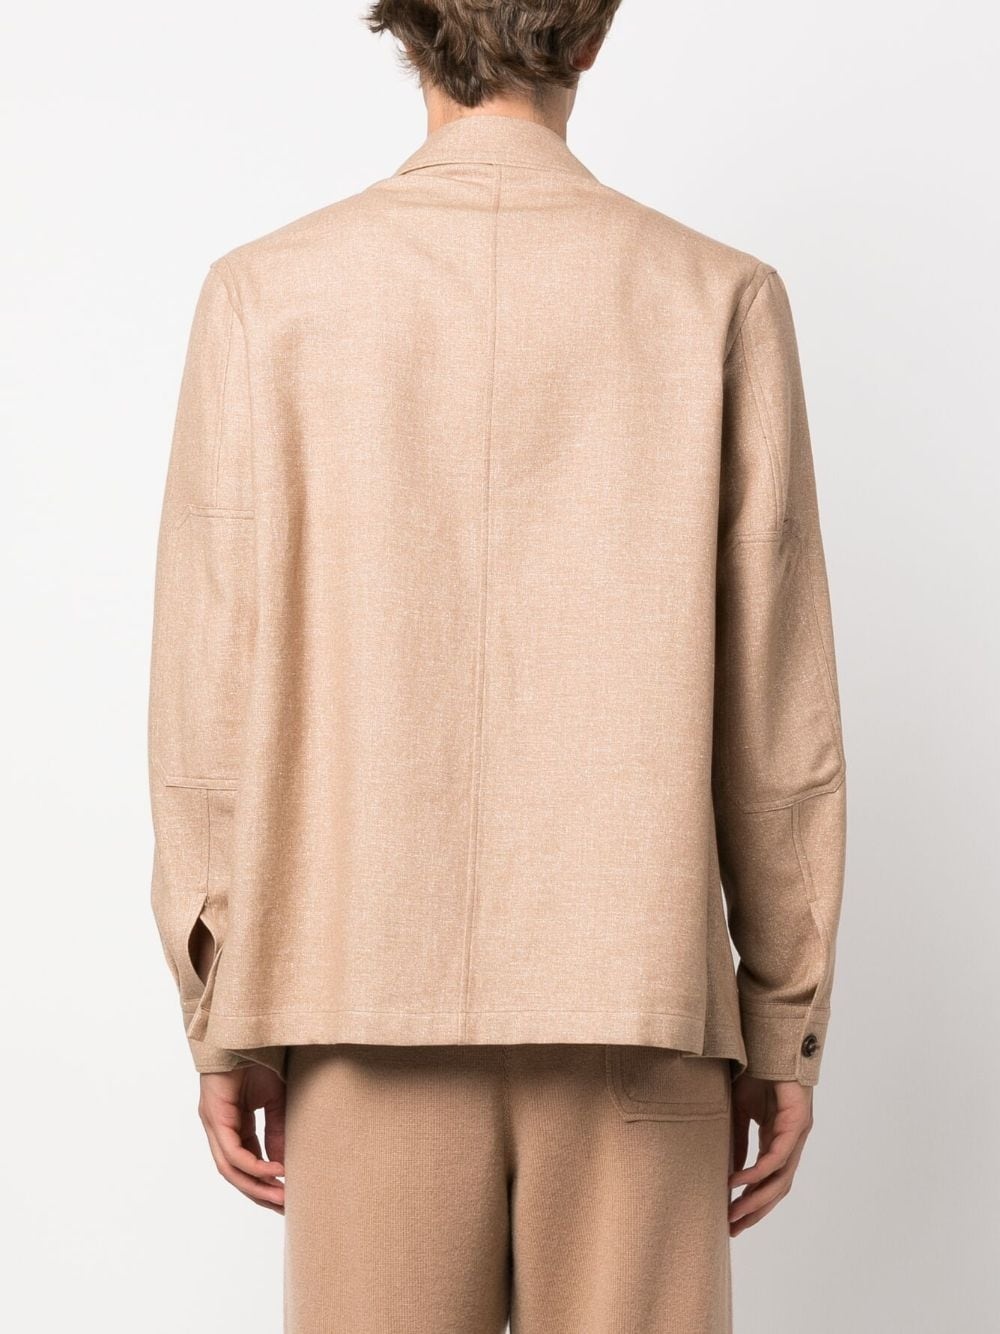 long-sleeve cashmere jacket - 4